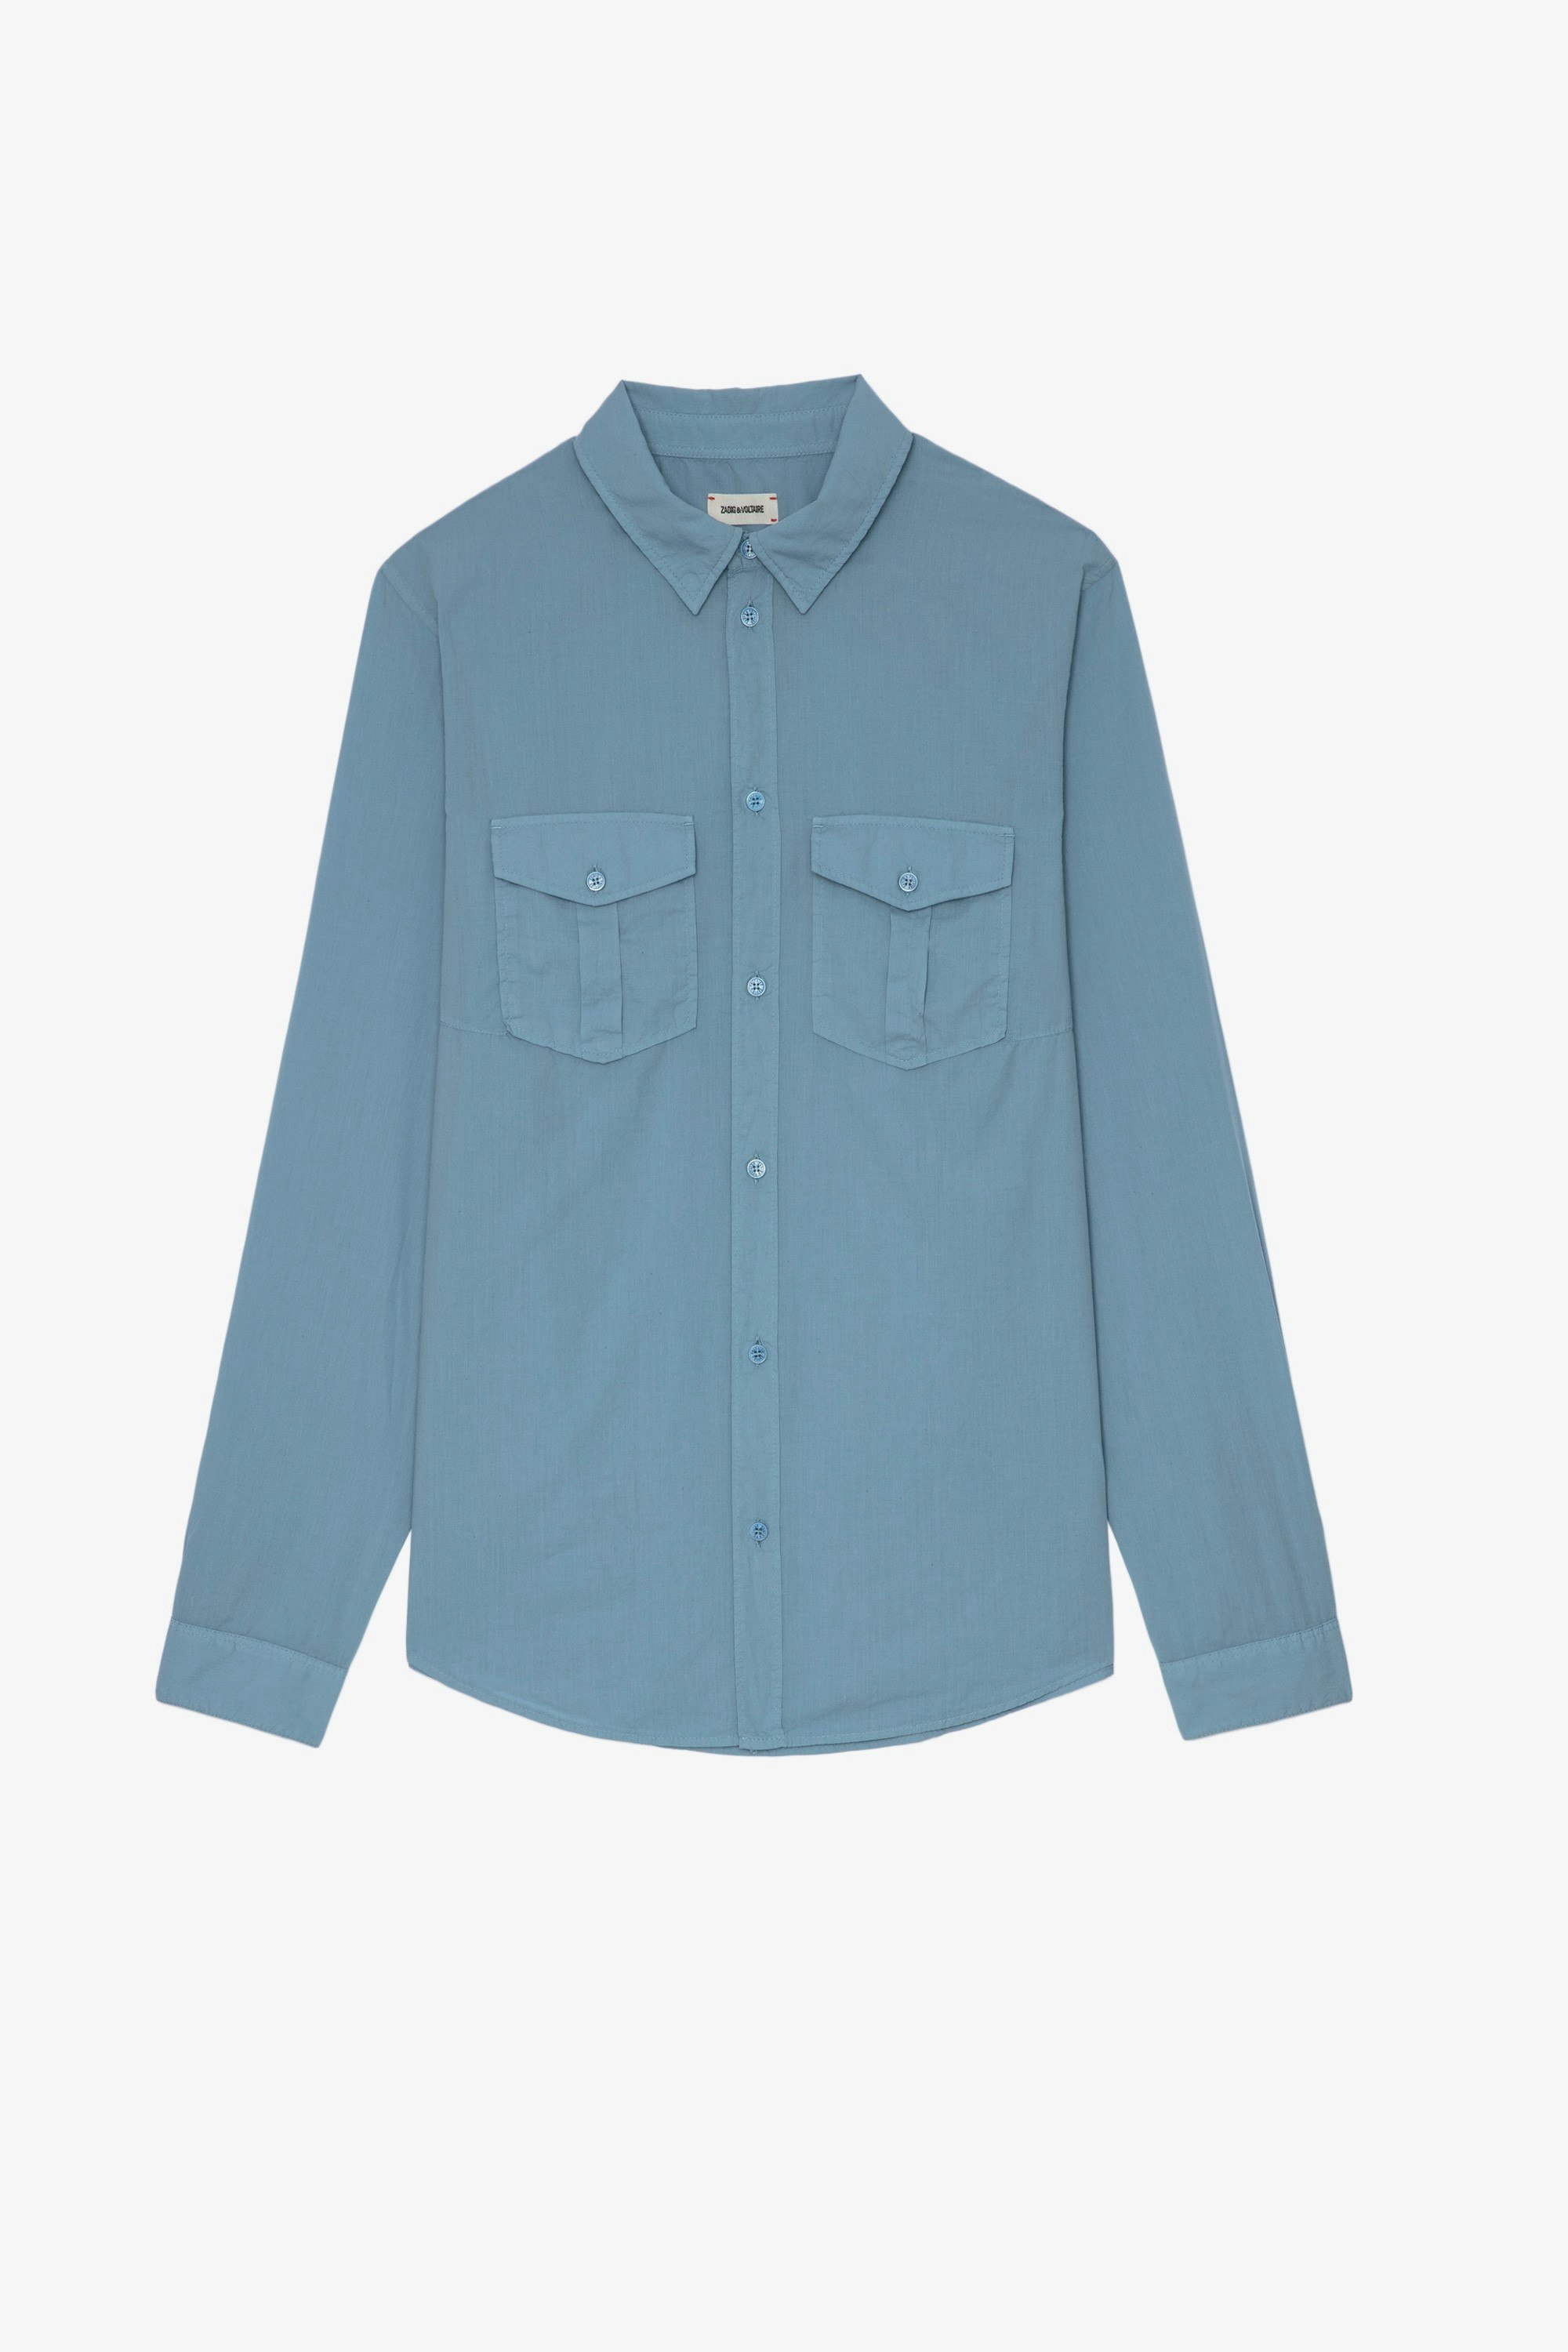 Camisa Thibaut Camisa de hombre de algodón azul celeste